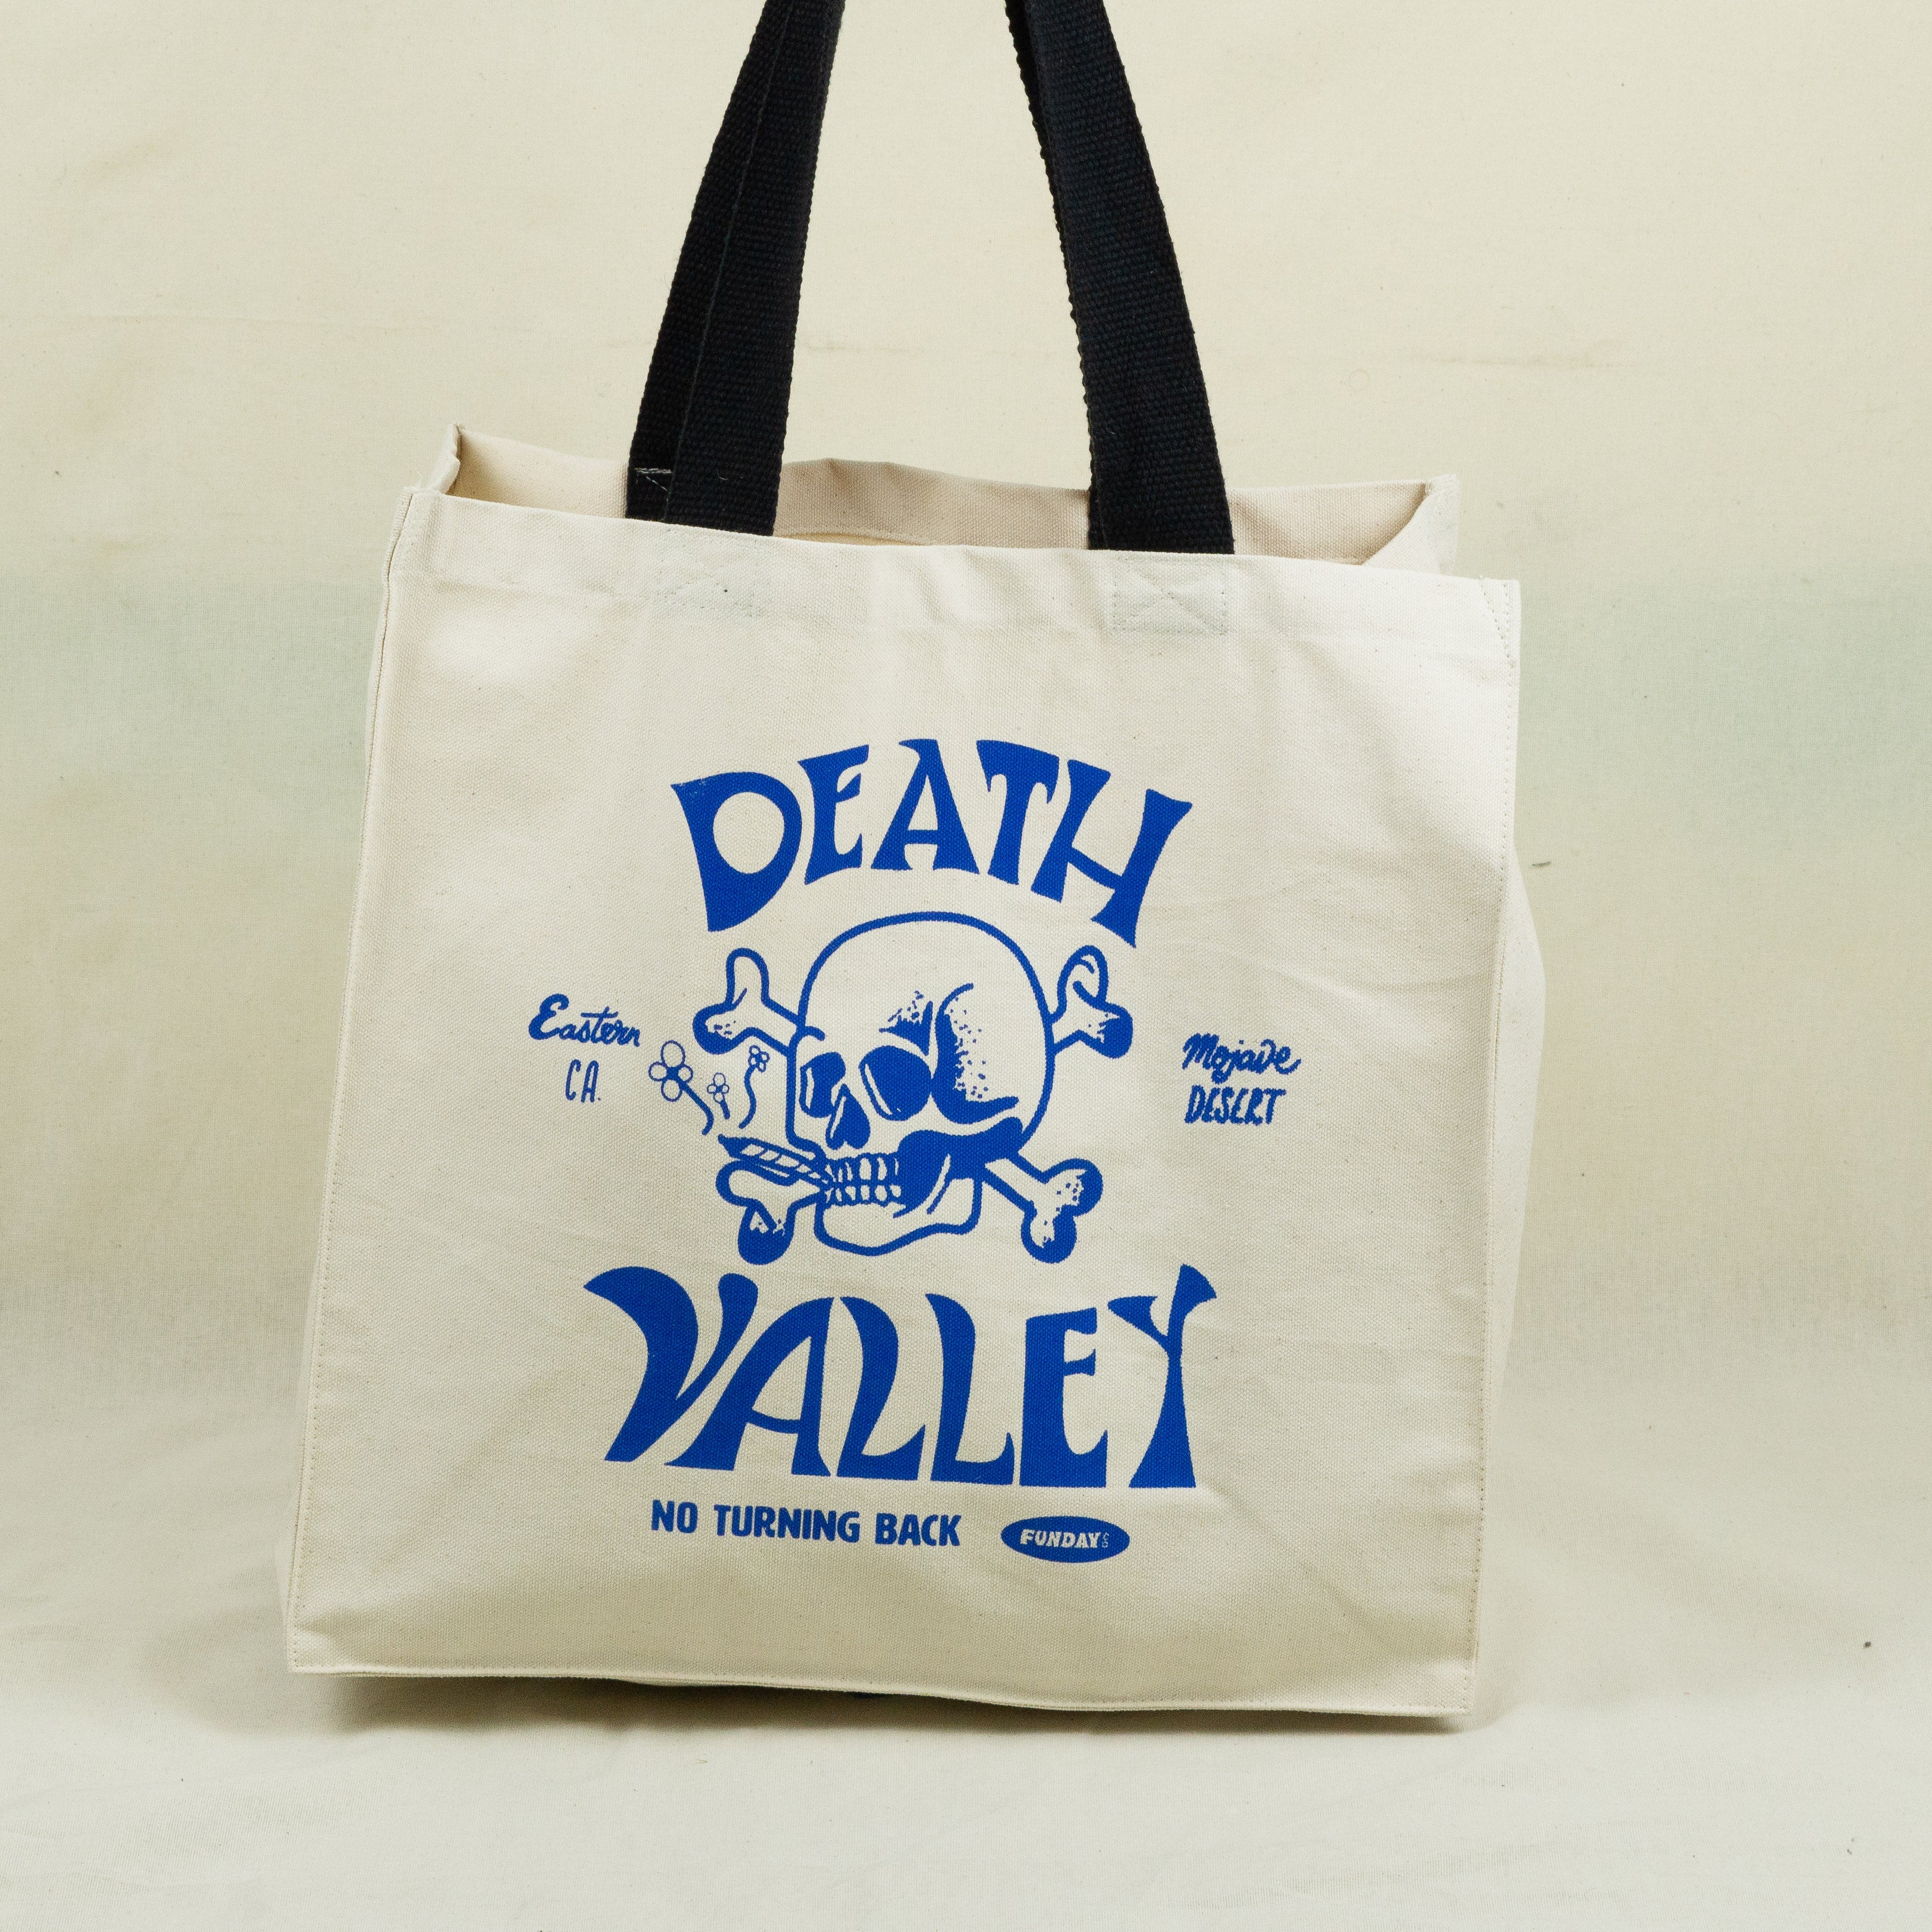 Death Valley tote bag